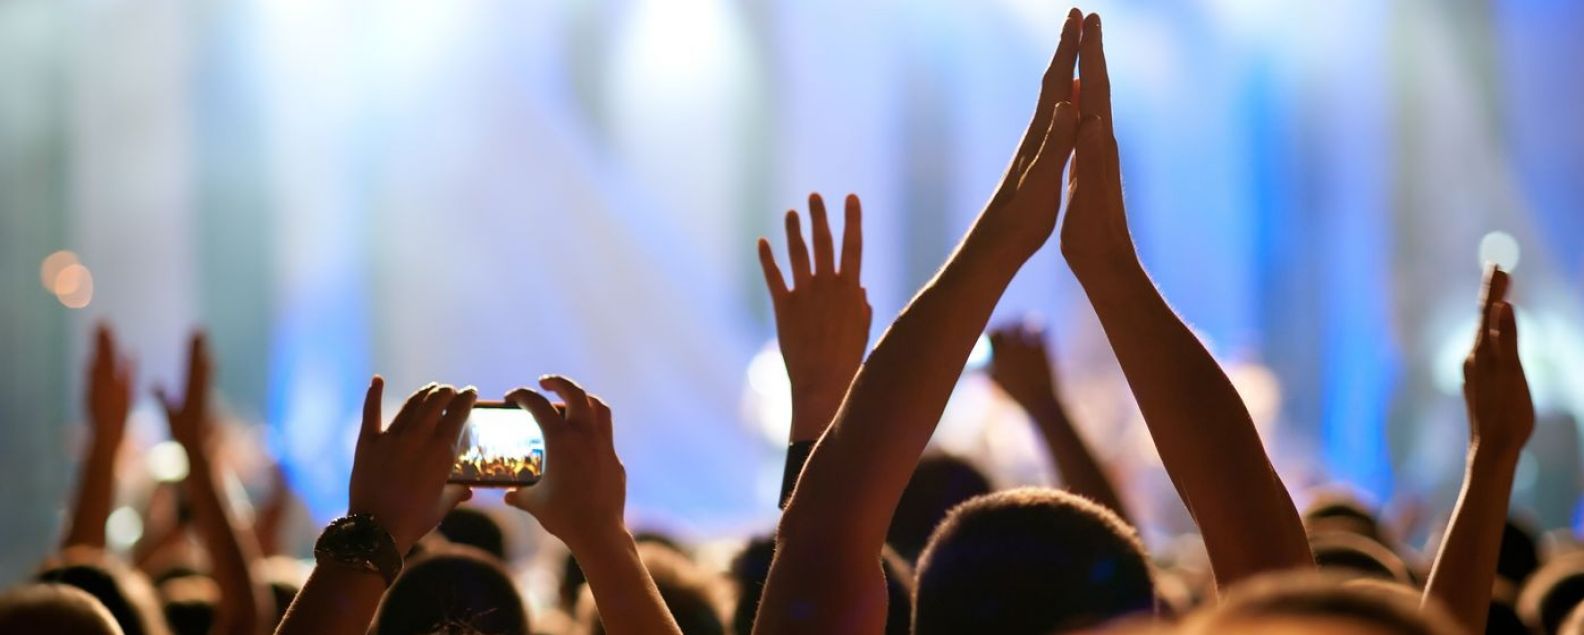 Blick von hinten auf eine Menschenmenge bei einem Konzert mit erhobenen Händen in der Luft